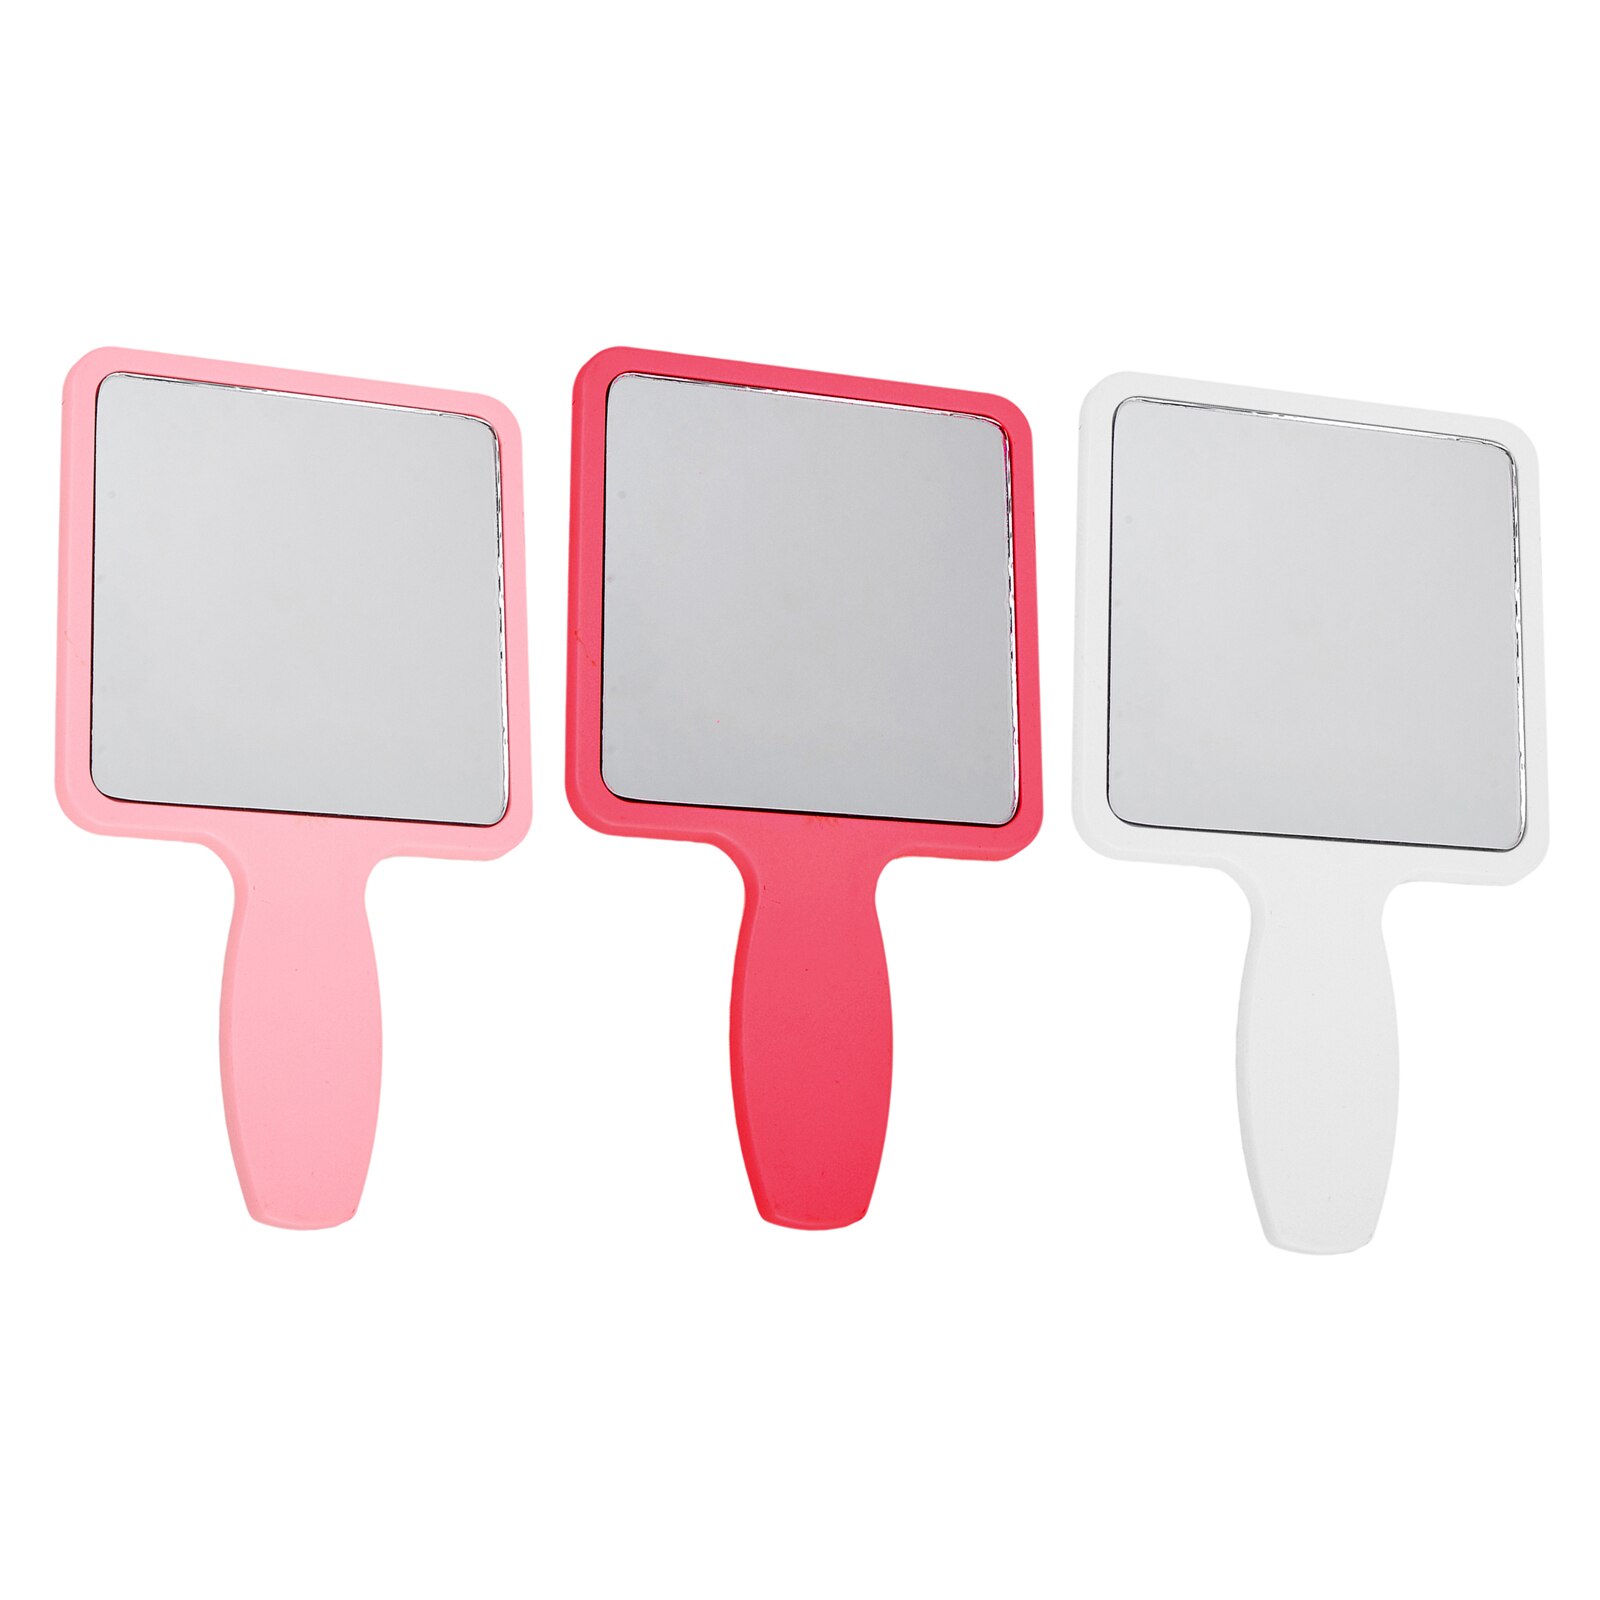 Make-Up Spiegel Plastic Hand Spiegels Make-Up Spiegel Hand Hold Cosmetische Spiegel Met Handvat Voor